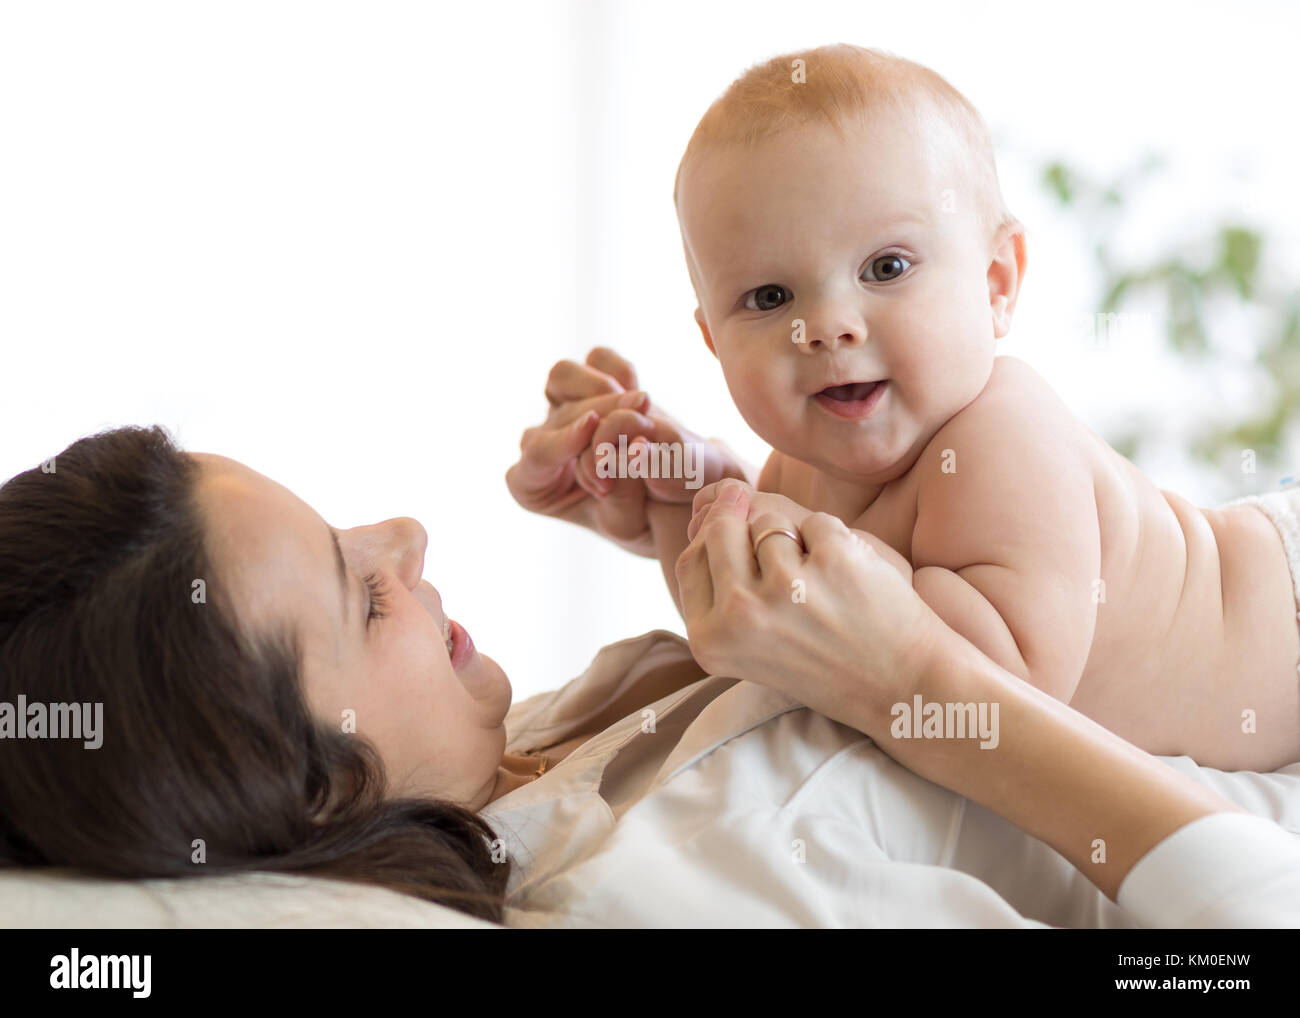 La madre y el bebé abrazándolo y jugar acostado en interiores Foto de stock